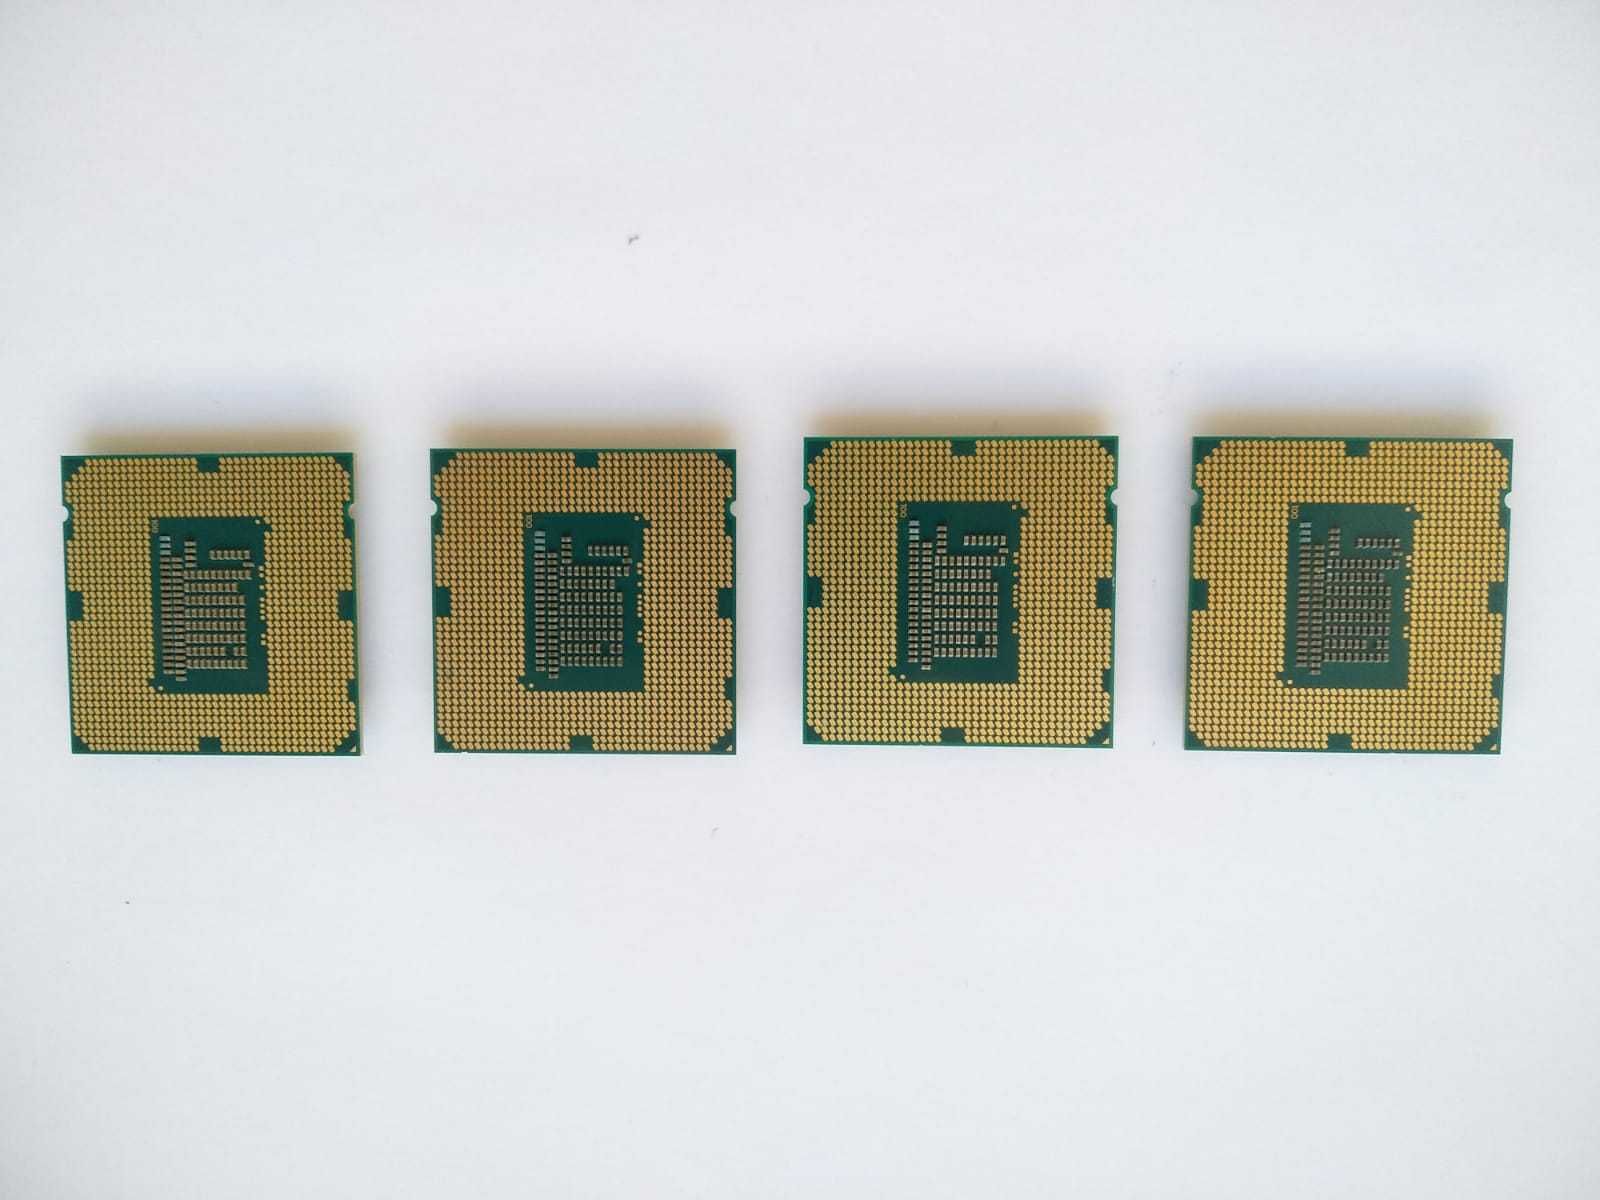 Процессоры Celeron G1610 и Pentium G2030 Сокет 1155 Kaspi Red